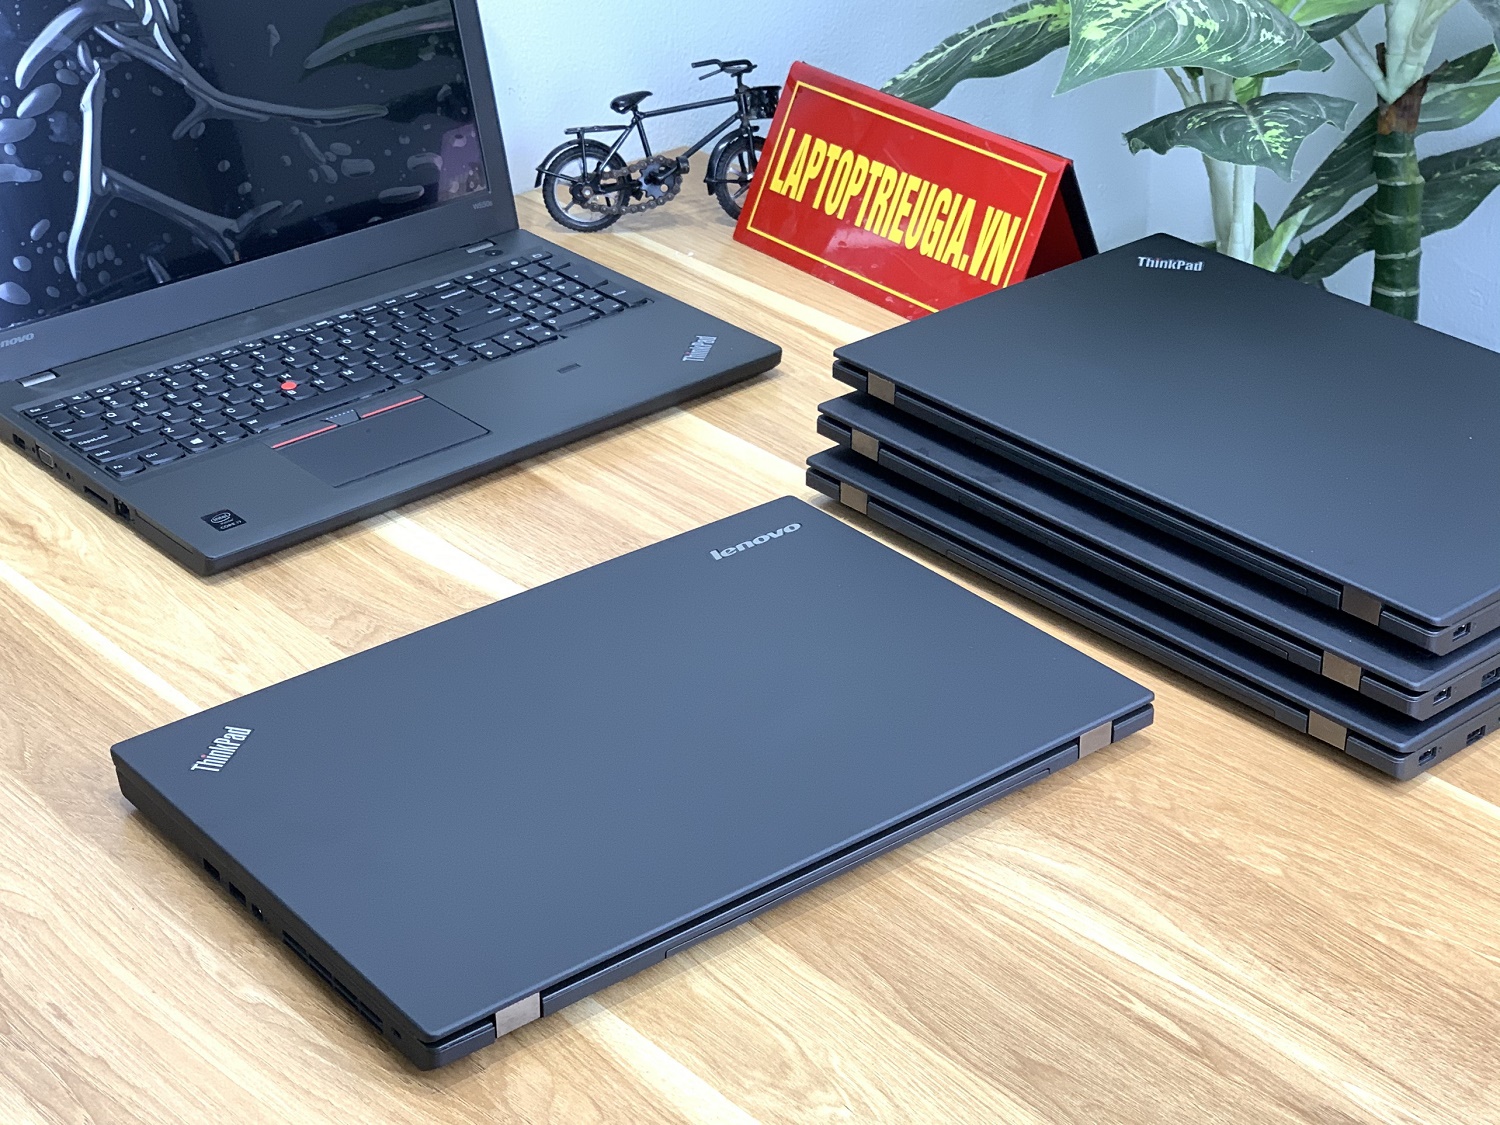 Lenovo Thinkpad W550s: i7-5600U | Ram 8Gb | SSD 256Gb | Quadro K620M | Màn 15.6 3K  | Máy đẹp likenew